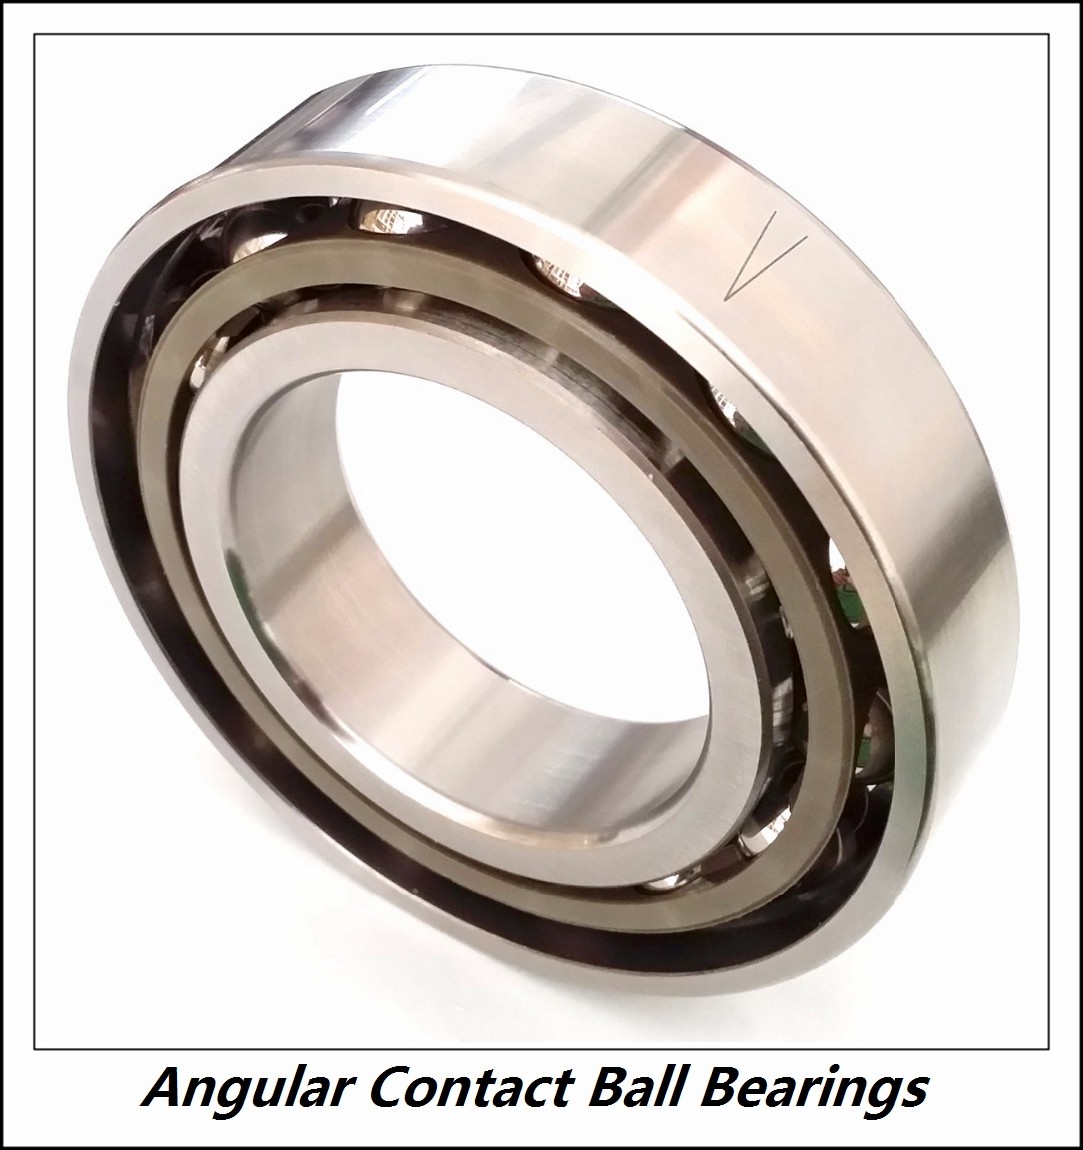 1.378 Inch | 35 Millimeter x 2.52 Inch | 64 Millimeter x 1.457 Inch | 37 Millimeter  NTN DF0766LLUACS32/L627  Angular Contact Ball Bearings